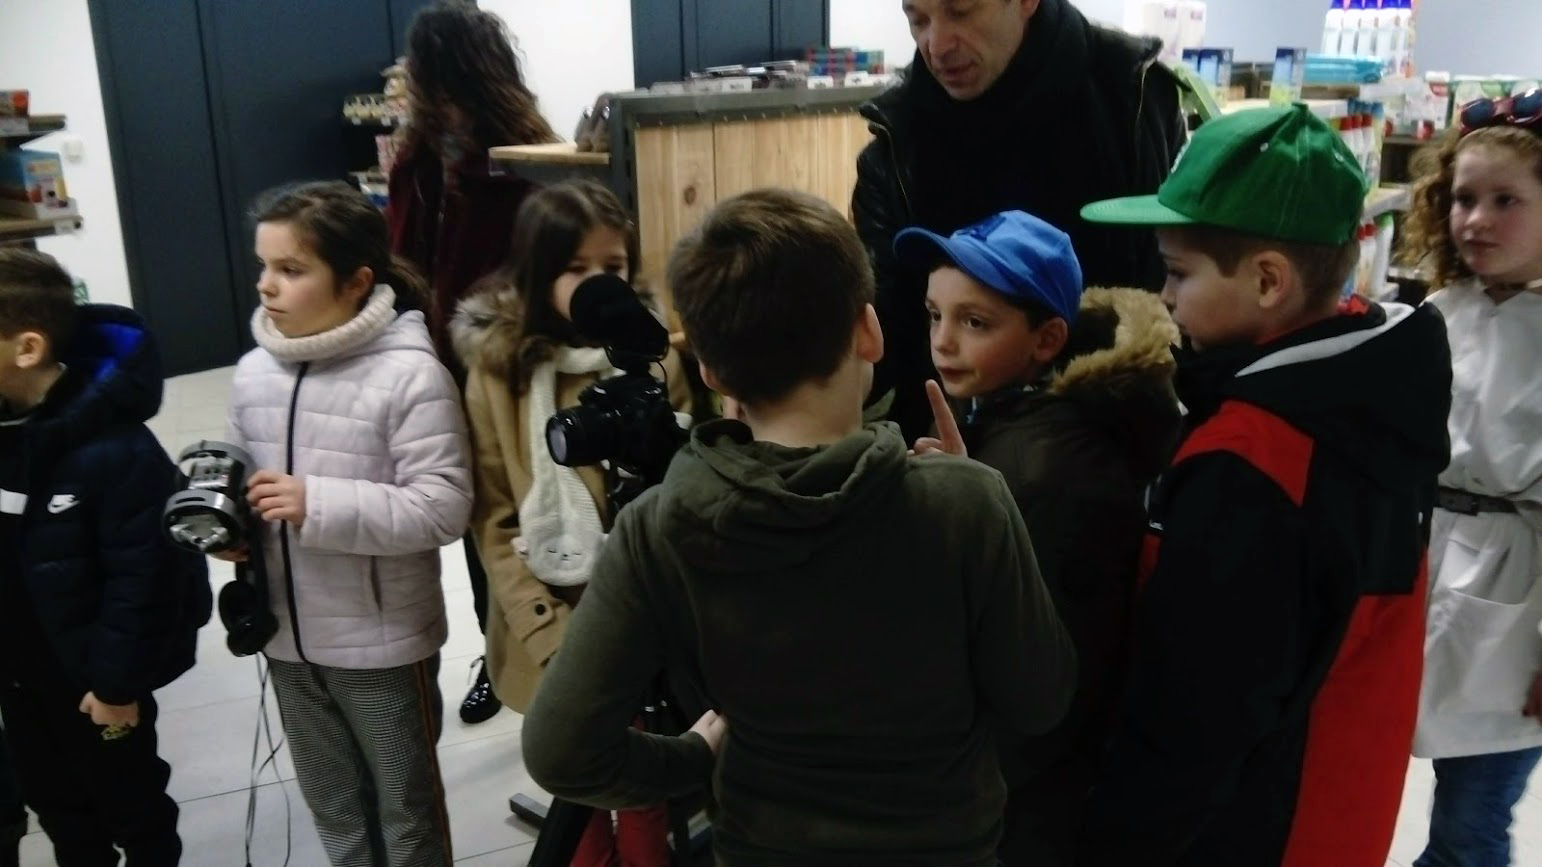 tournage du court-métrage des enfants de Vauchrétien dans l'épicerie